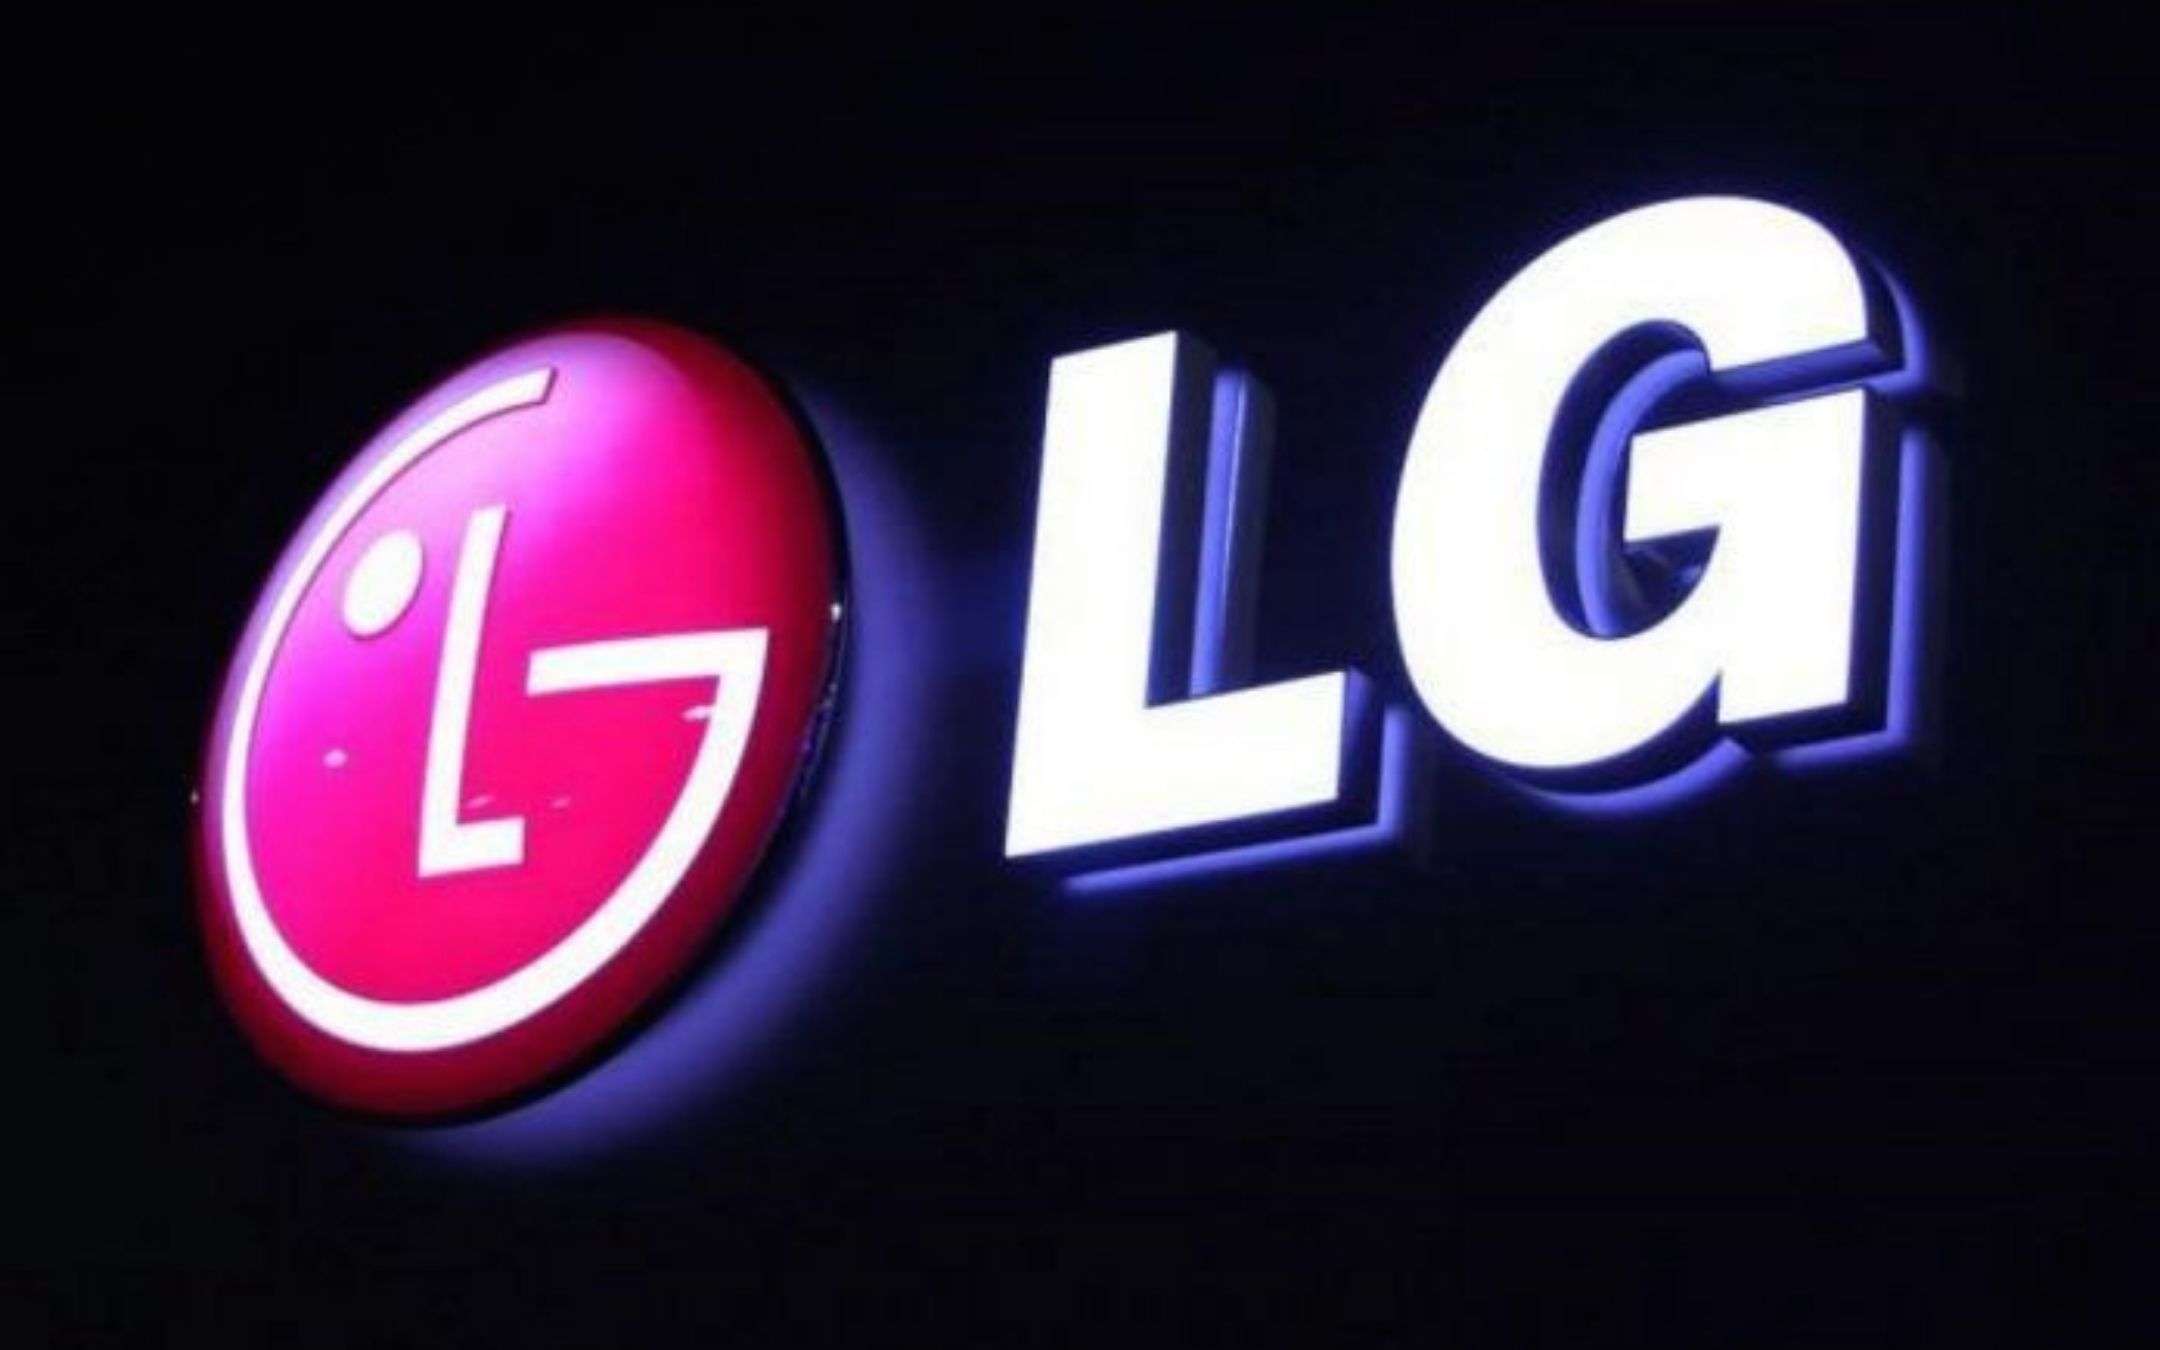 LG: settore smartphone ad un passo dalla chiusura